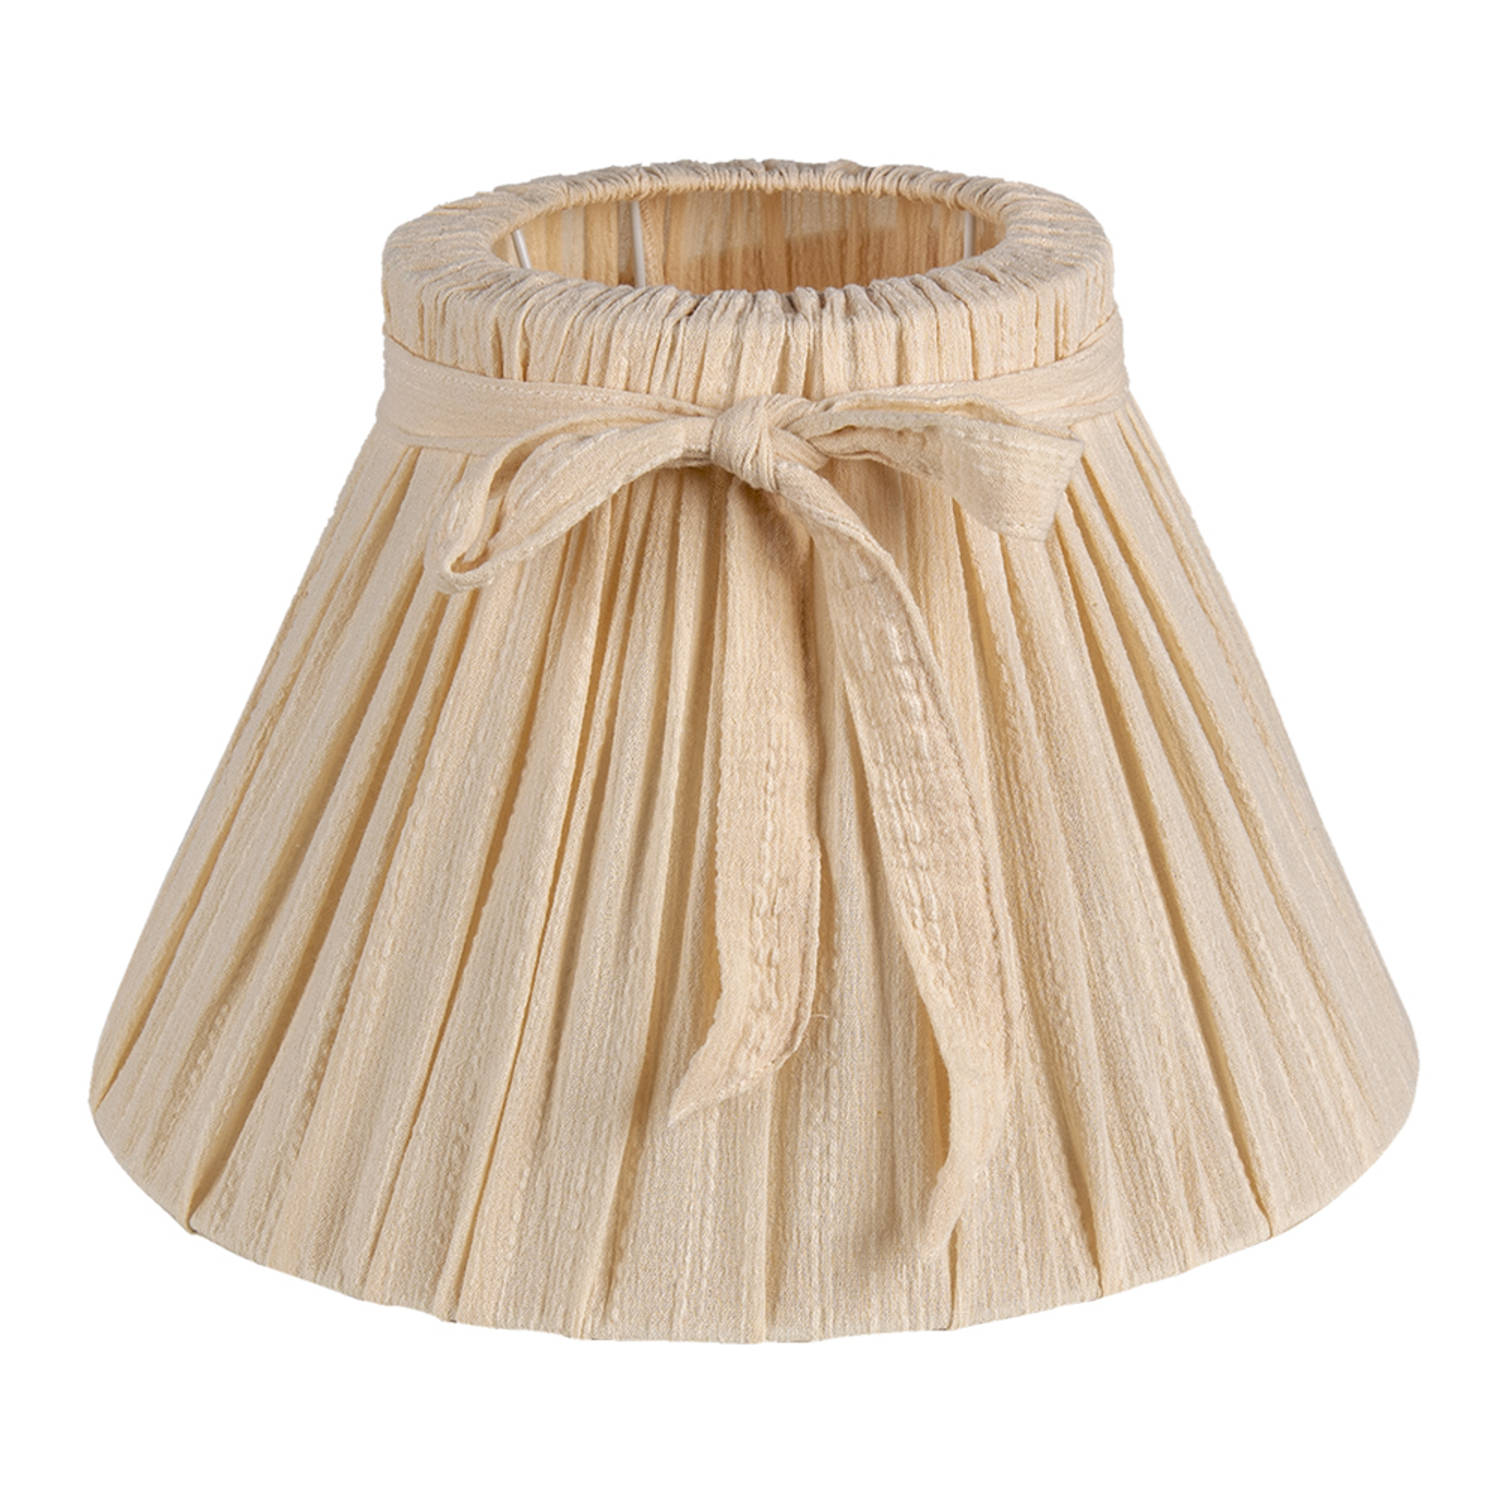 HAES DECO - Lampenkap - Natural Cosy - beige met strikje - formaat Ø 33x21 cm, voor Fitting E27 - Tafellamp, Hanglamp